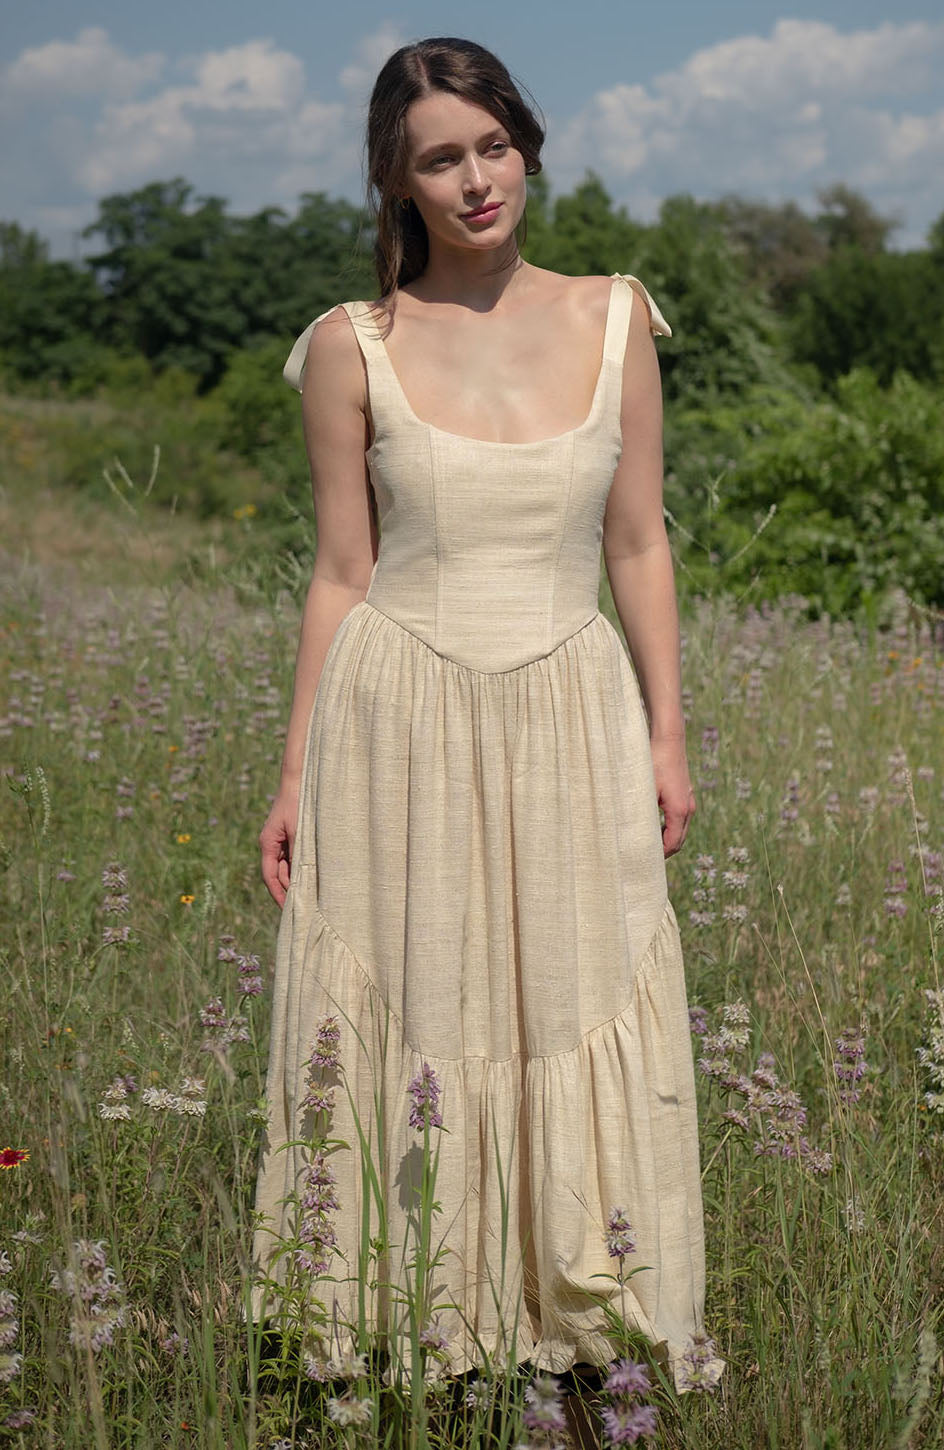 Mirabelle Dress in Wild Silk